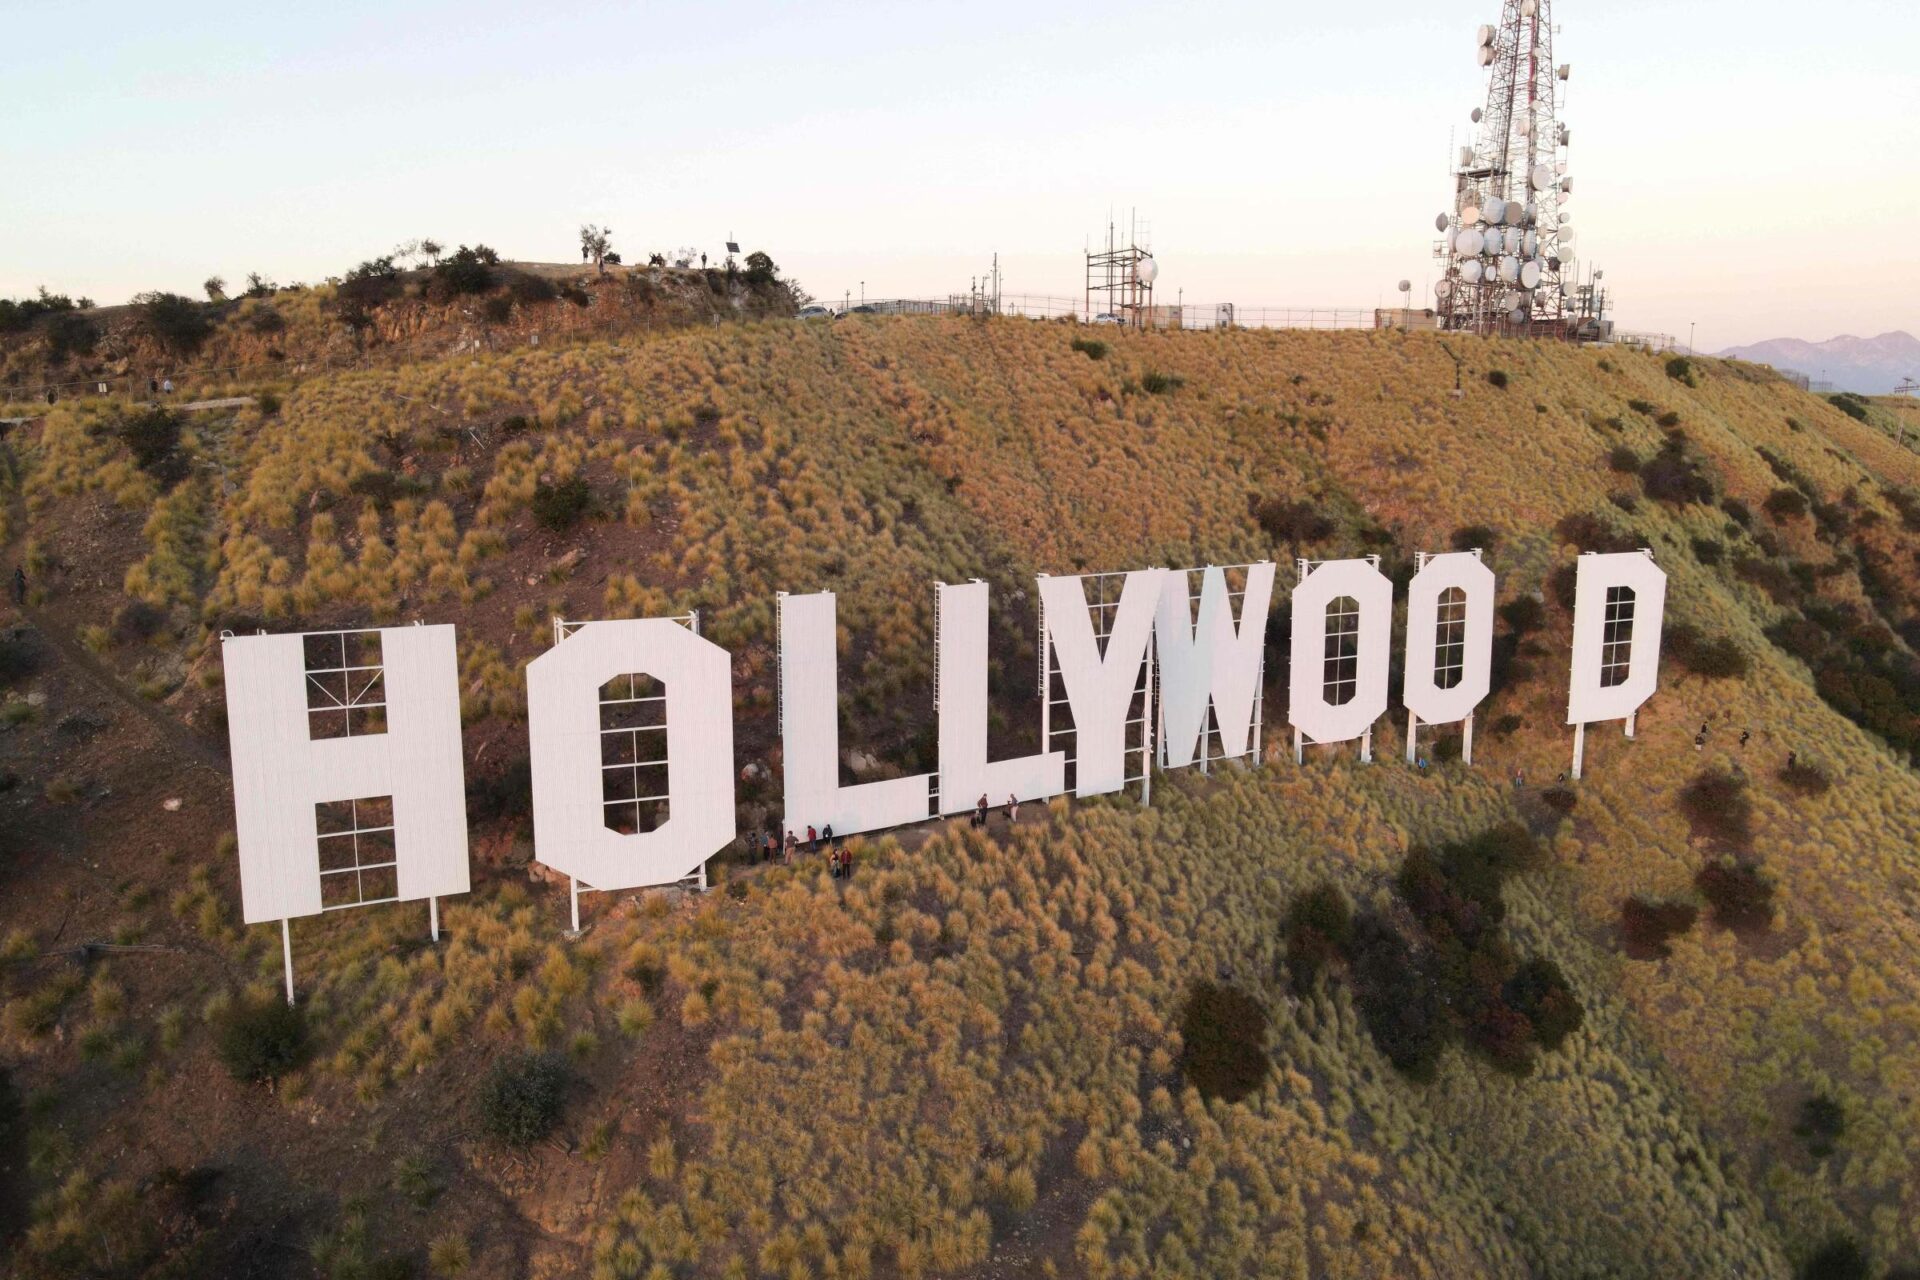 Icónico letreiro de Hollywood ganha retoques para o seu centenário